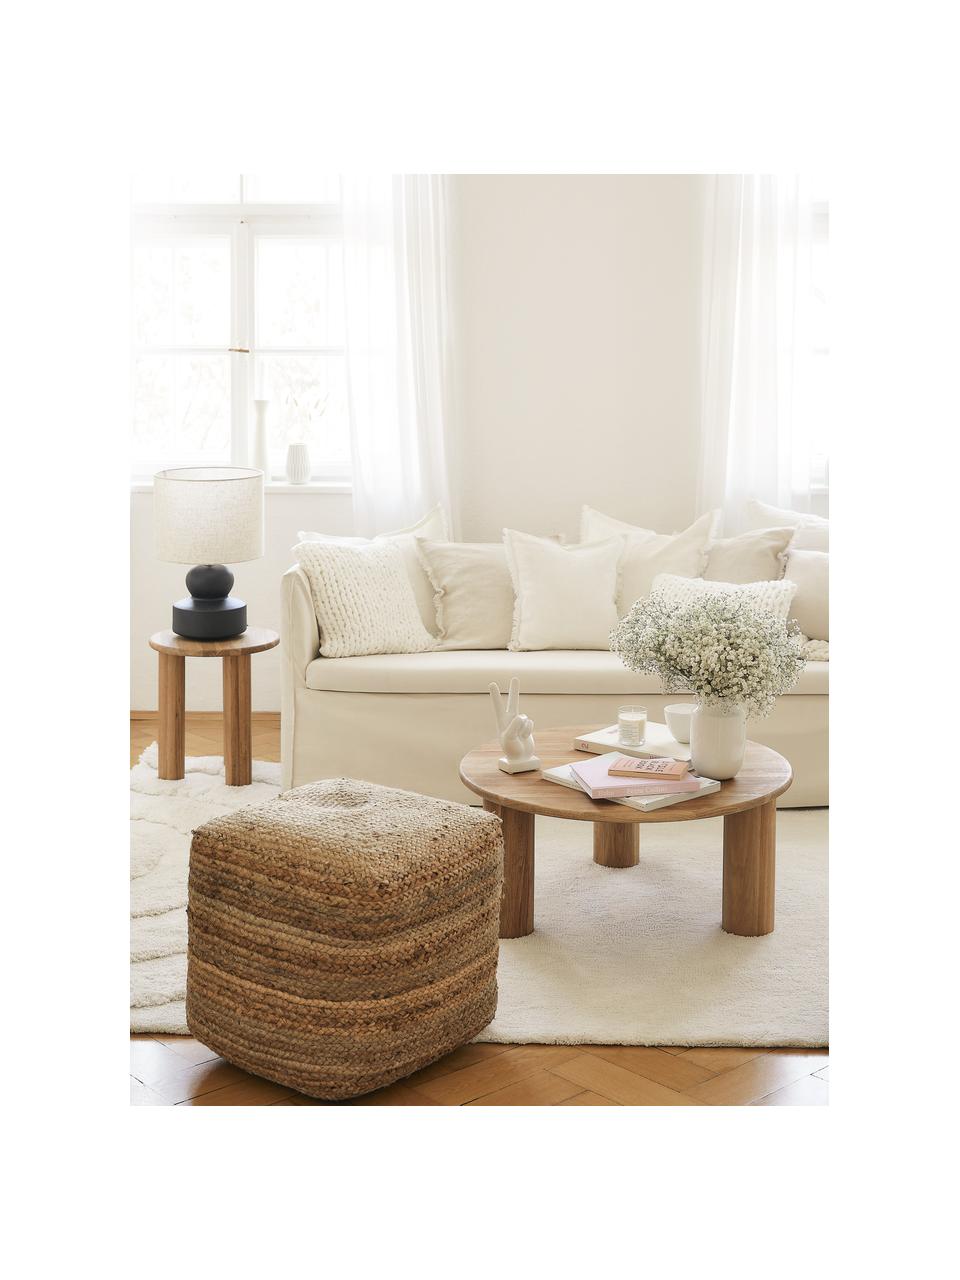 Ręcznie wykonana poszewka na poduszkę z grubej dzianiny Adyna, 100% poliakryl, Biały, S 45 x D 45 cm